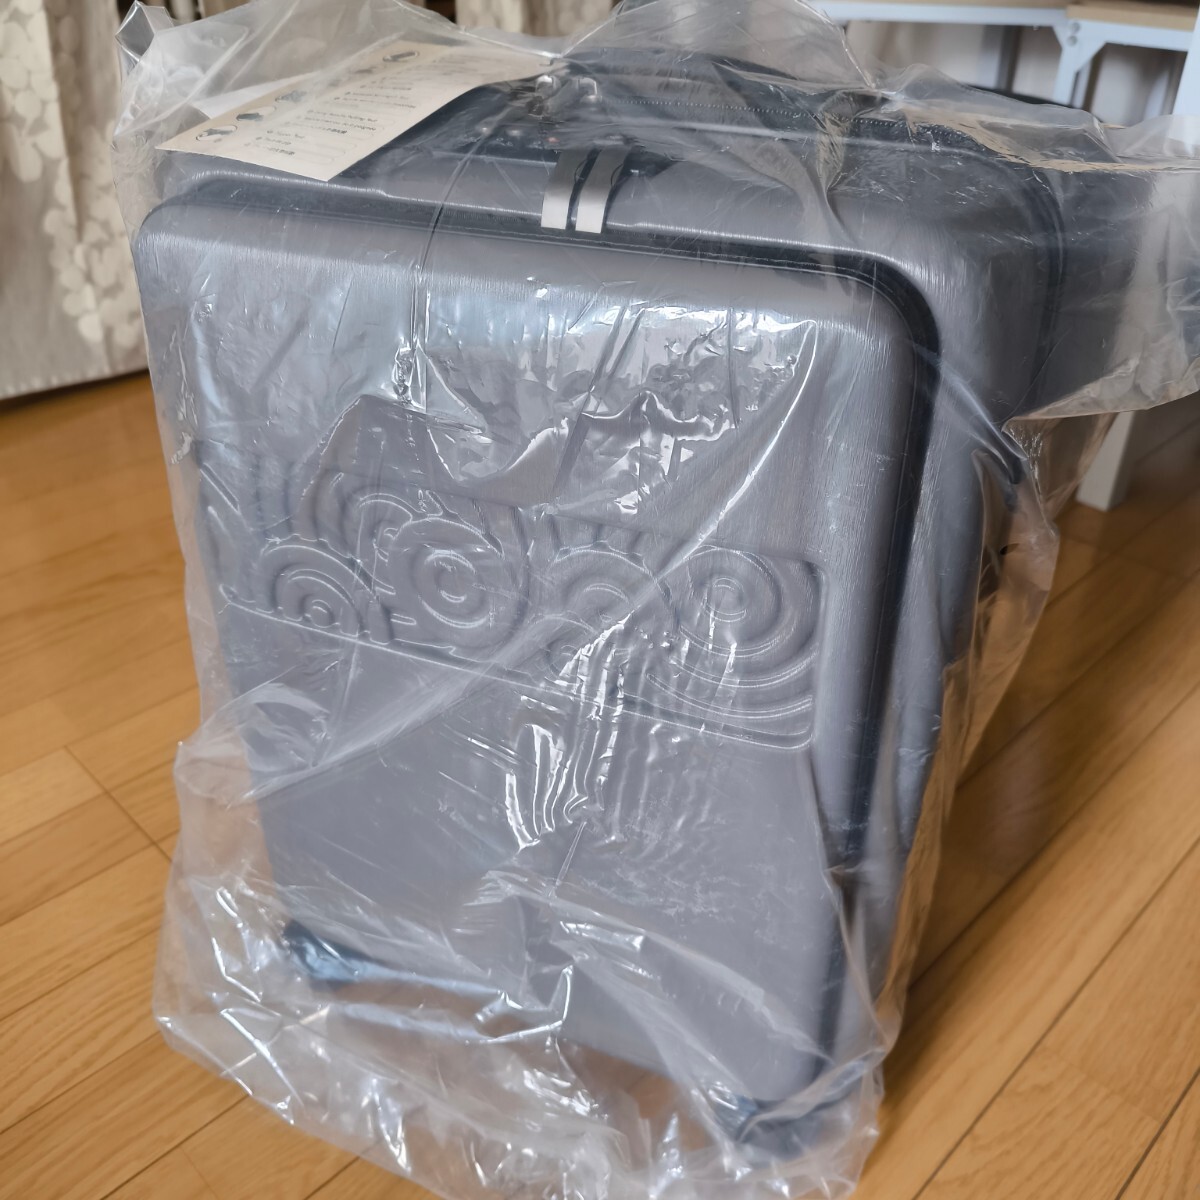  новый товар машина внутри принесенный [Krute] Carry кейс чемодан с функцией расширения . дорожная сумка дорожная сумка большая вместимость симпатичный TSA блокировка 